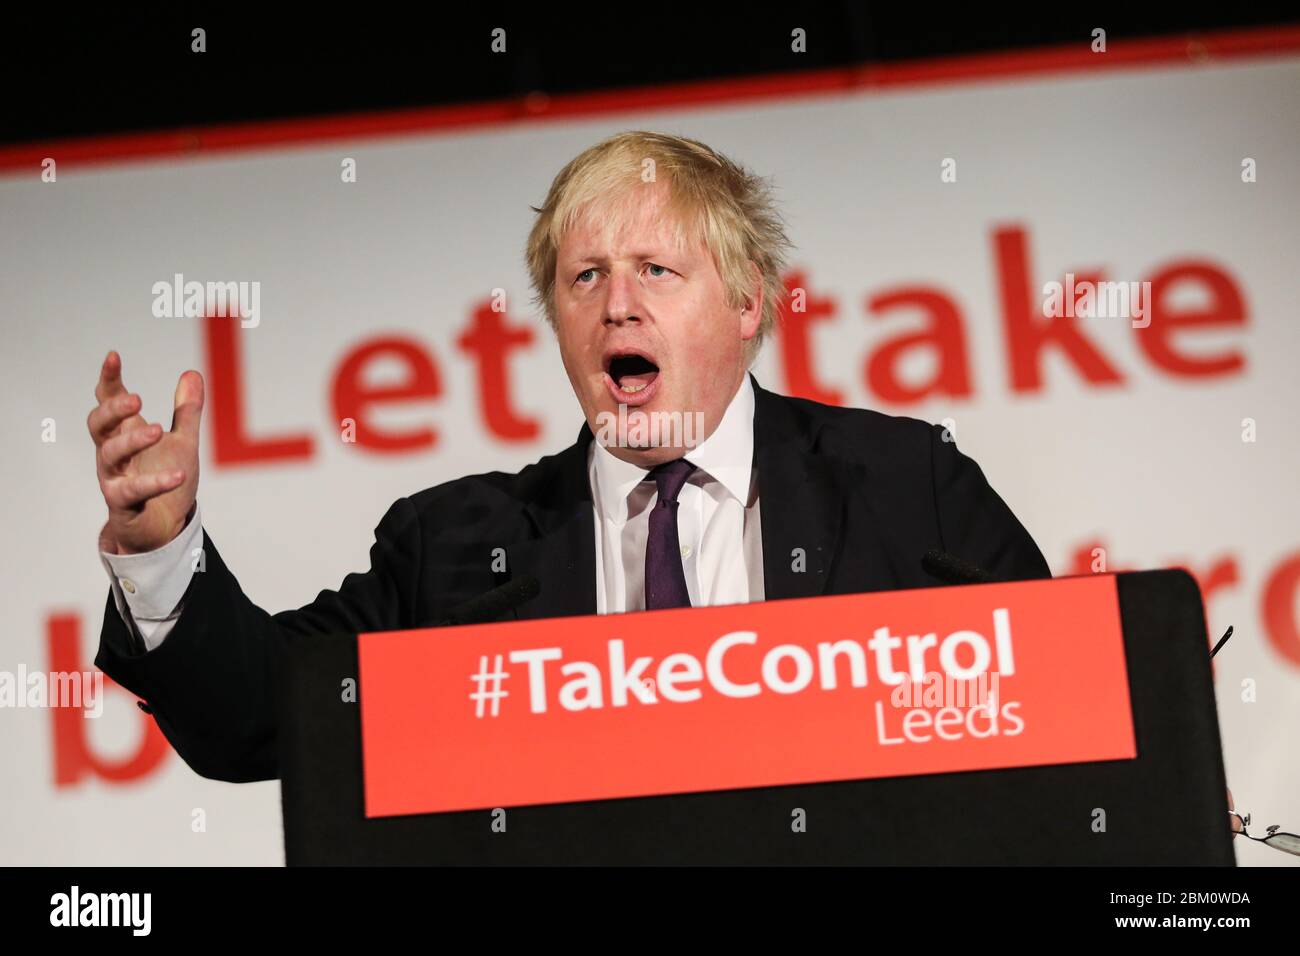 Boris Johnson, député conservateur et maire de Londres, parle lors d'un congé de vote à Leeds, dans le West Yorkshire. Faire campagne pour le référendum, qui va de Banque D'Images